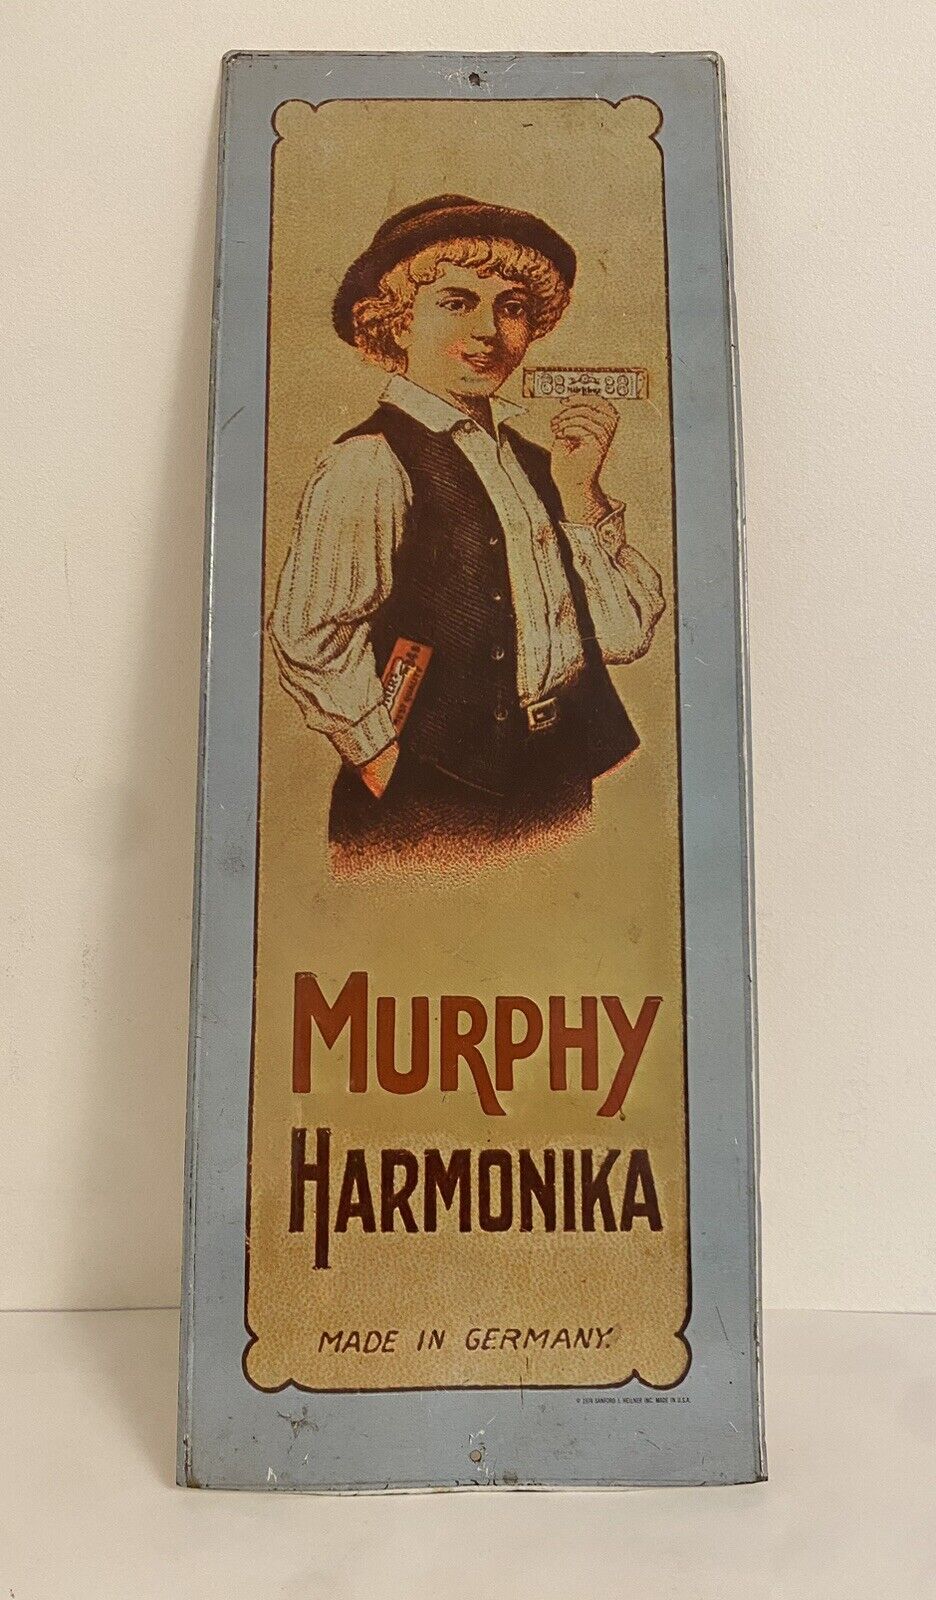 Vintage Metal Tin Advertising Sign Murphy Harmonika Germany Made In USA 1974